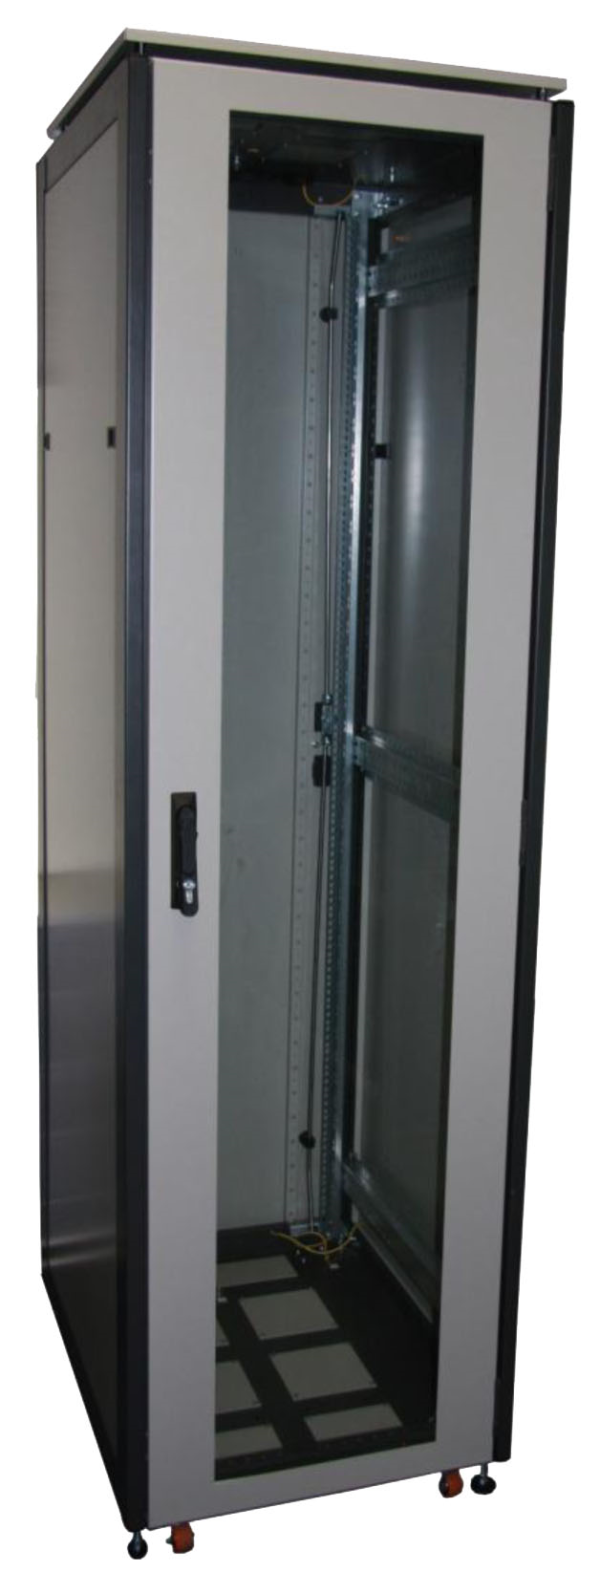 ССКТБ ТОМАСС ШТК-8812Э-00 - шкаф телекоммуникационный 19", 24U, 800х800х1200 мм, с металлической и стеклянной дверью